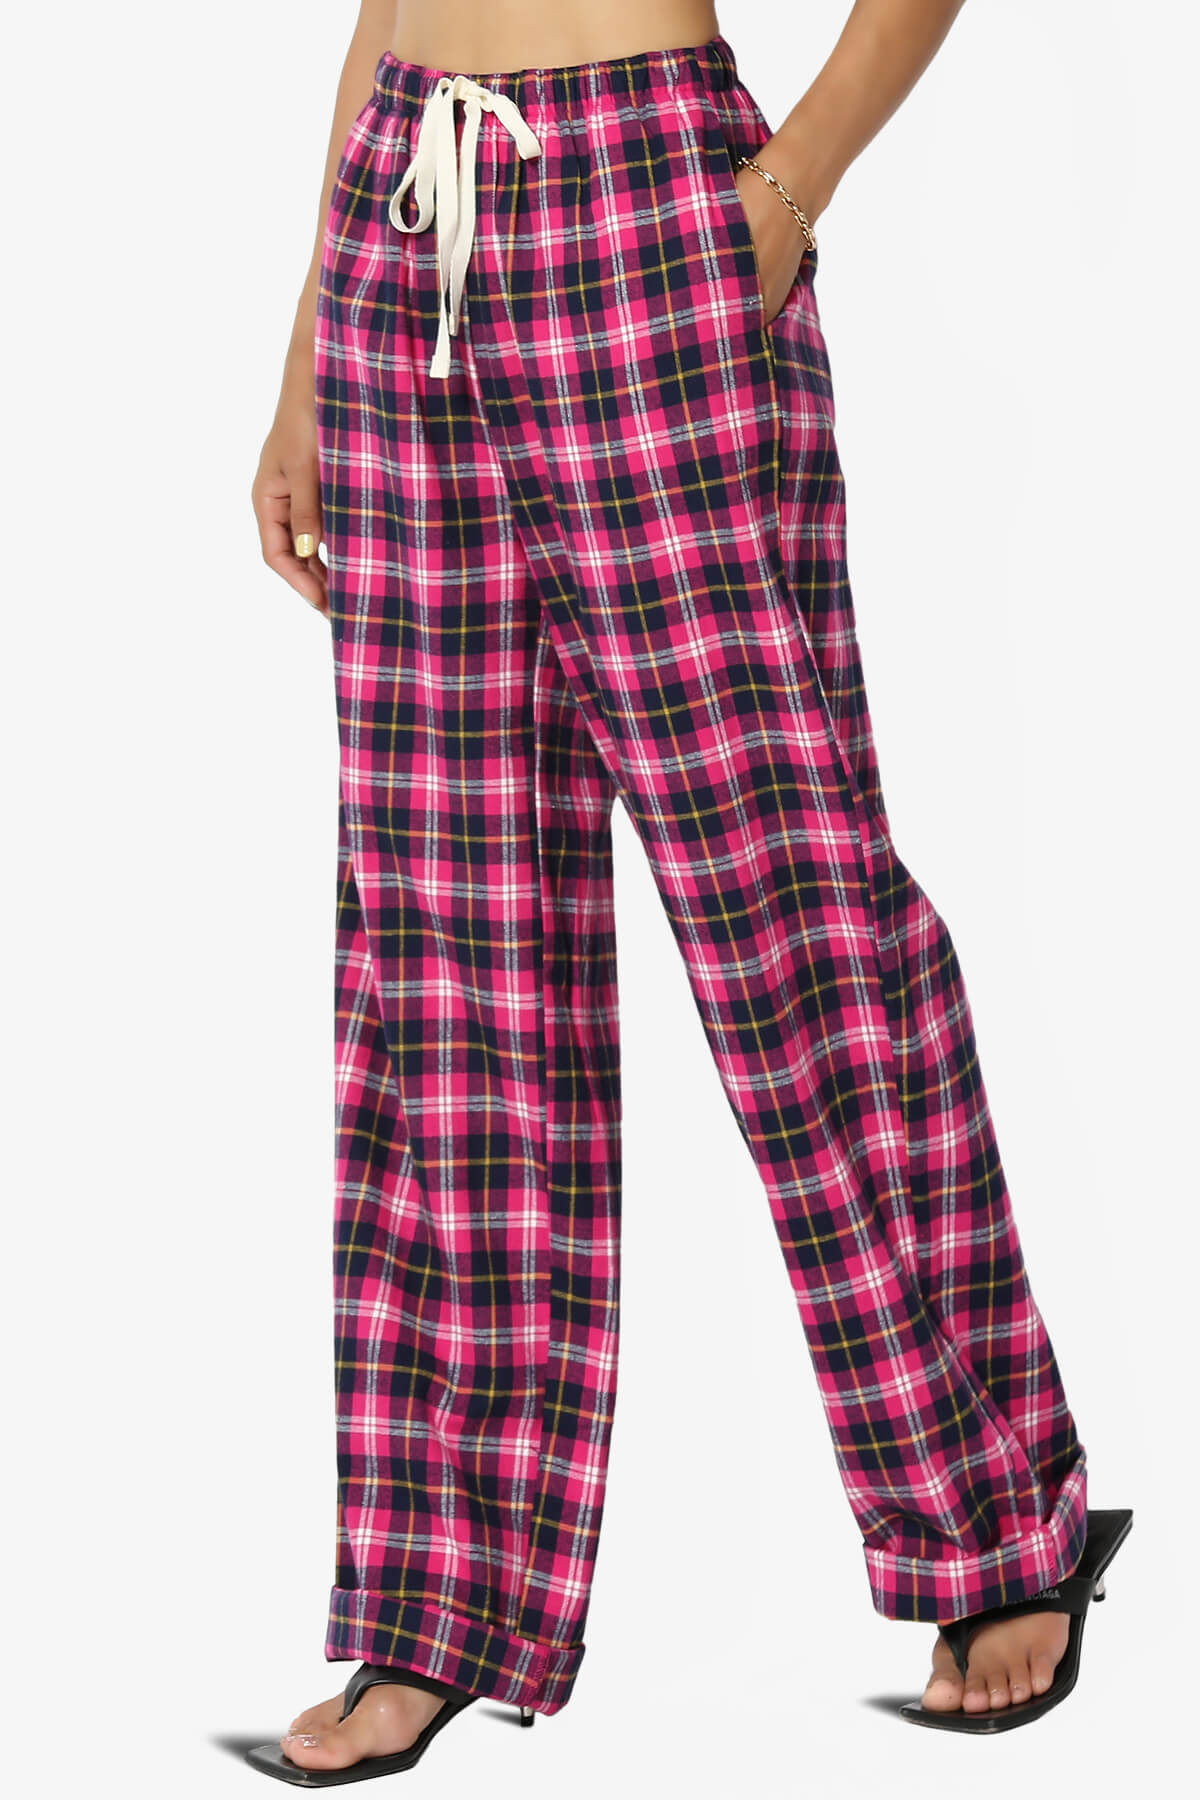 MAWCLOS Ladies Casual Plaid Pj Bottoms Wide Leg Check Print Pajama